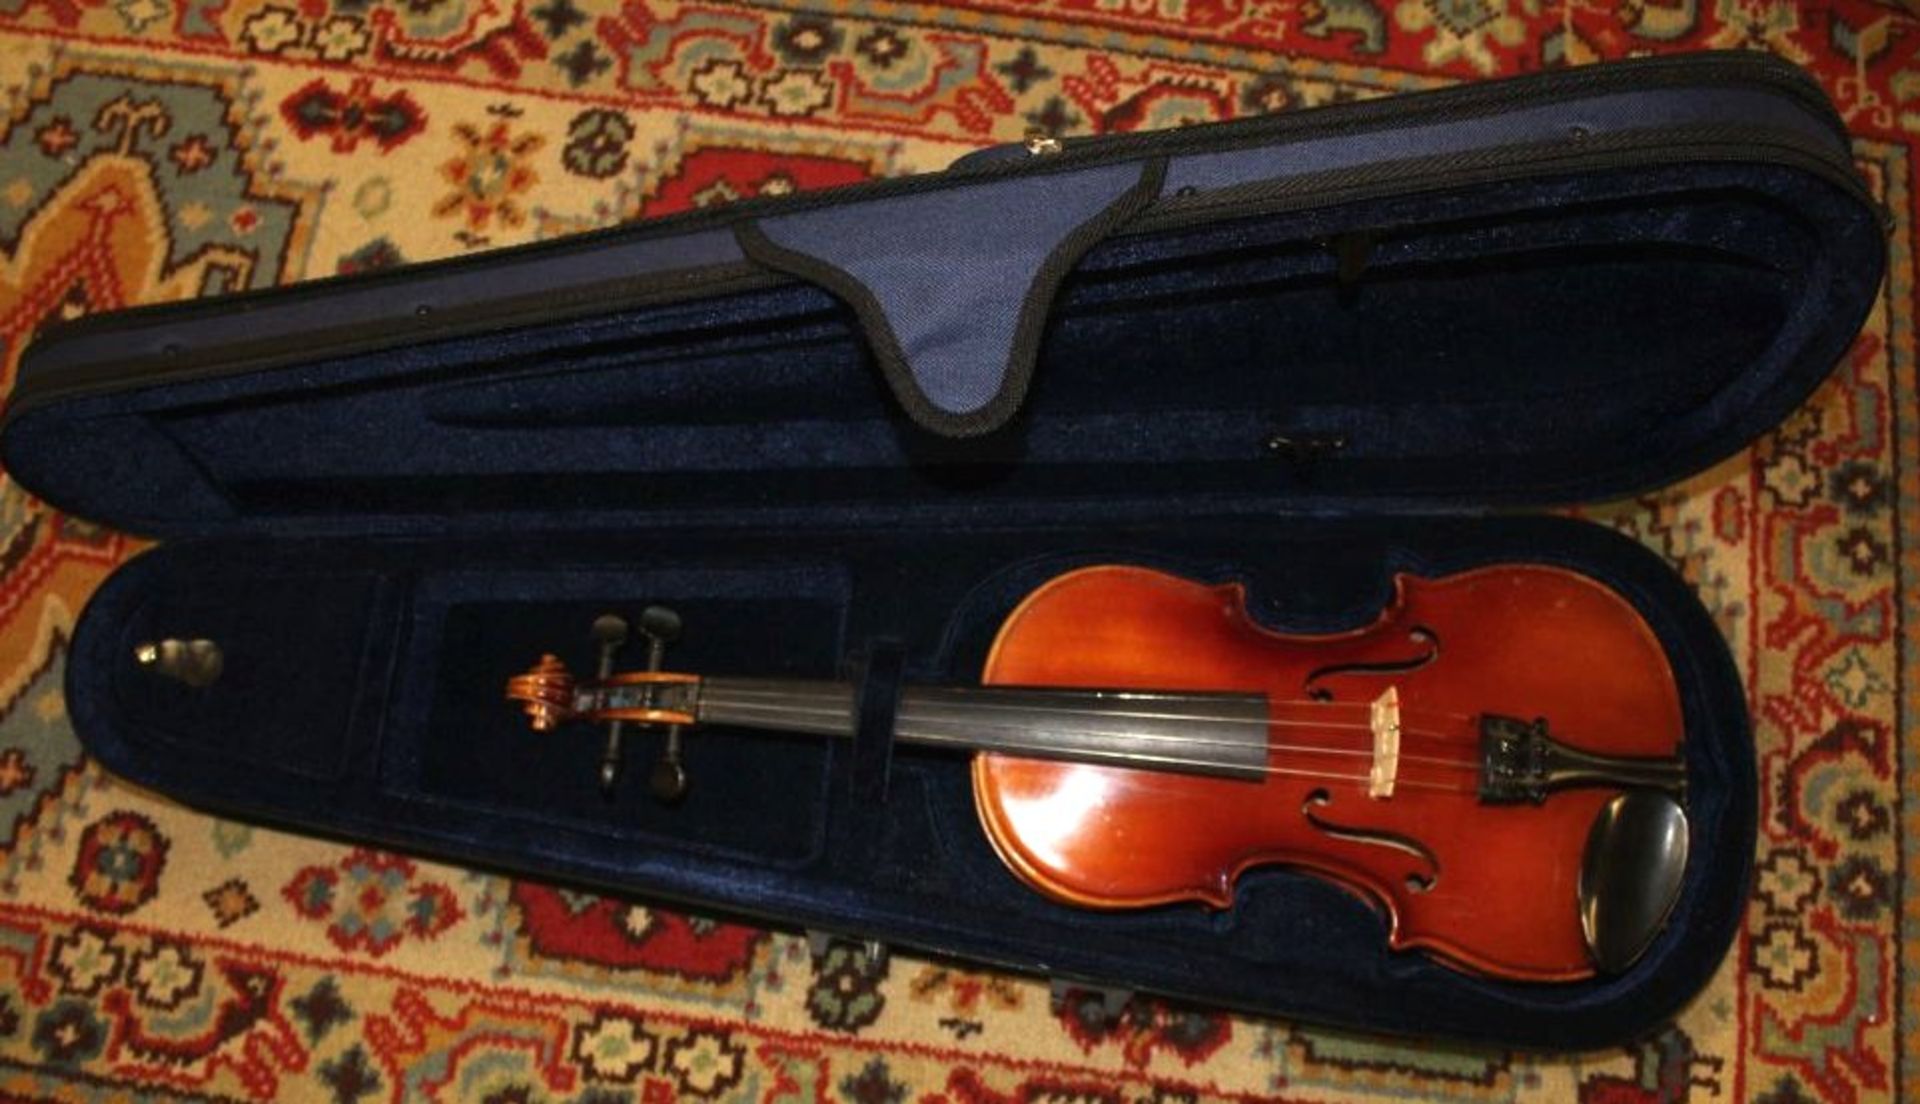 Geige, innen Klebeetikett "Intrumentenbau Mittenwald -Adorf", guter Zustand, anbei Bogen, L-57cm, in - Bild 9 aus 9